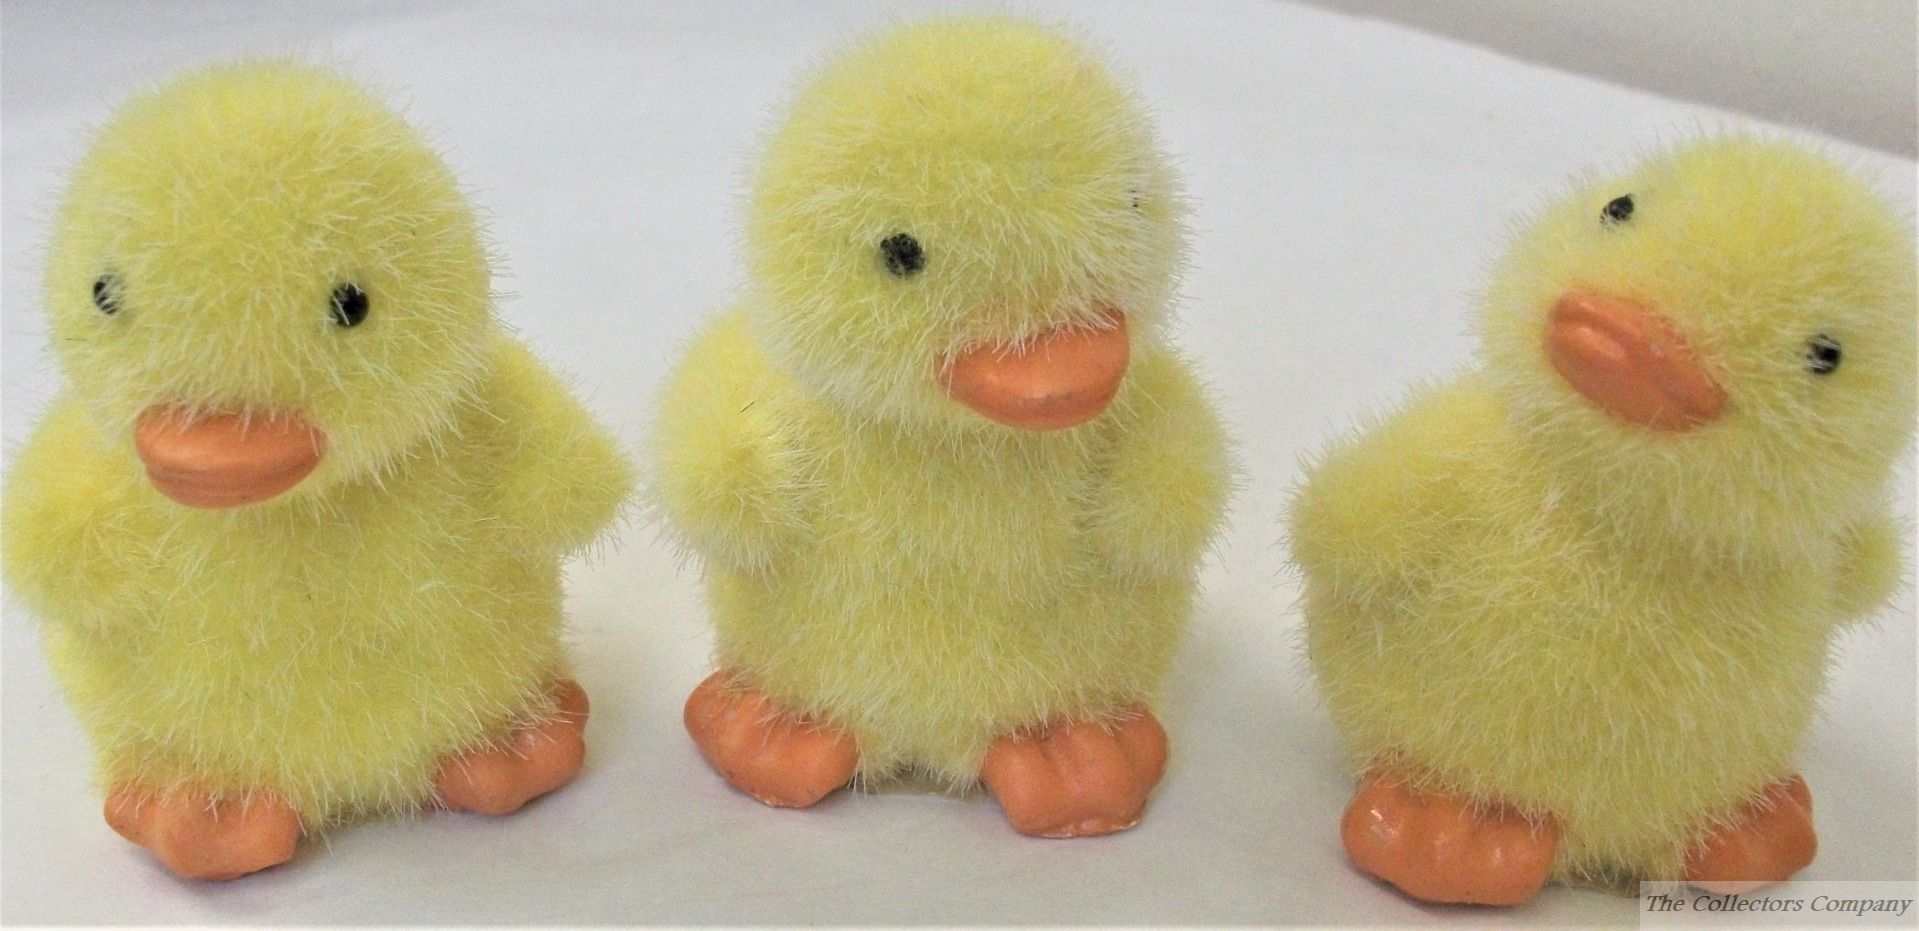 Fuzzy-yellow-chick-figurine